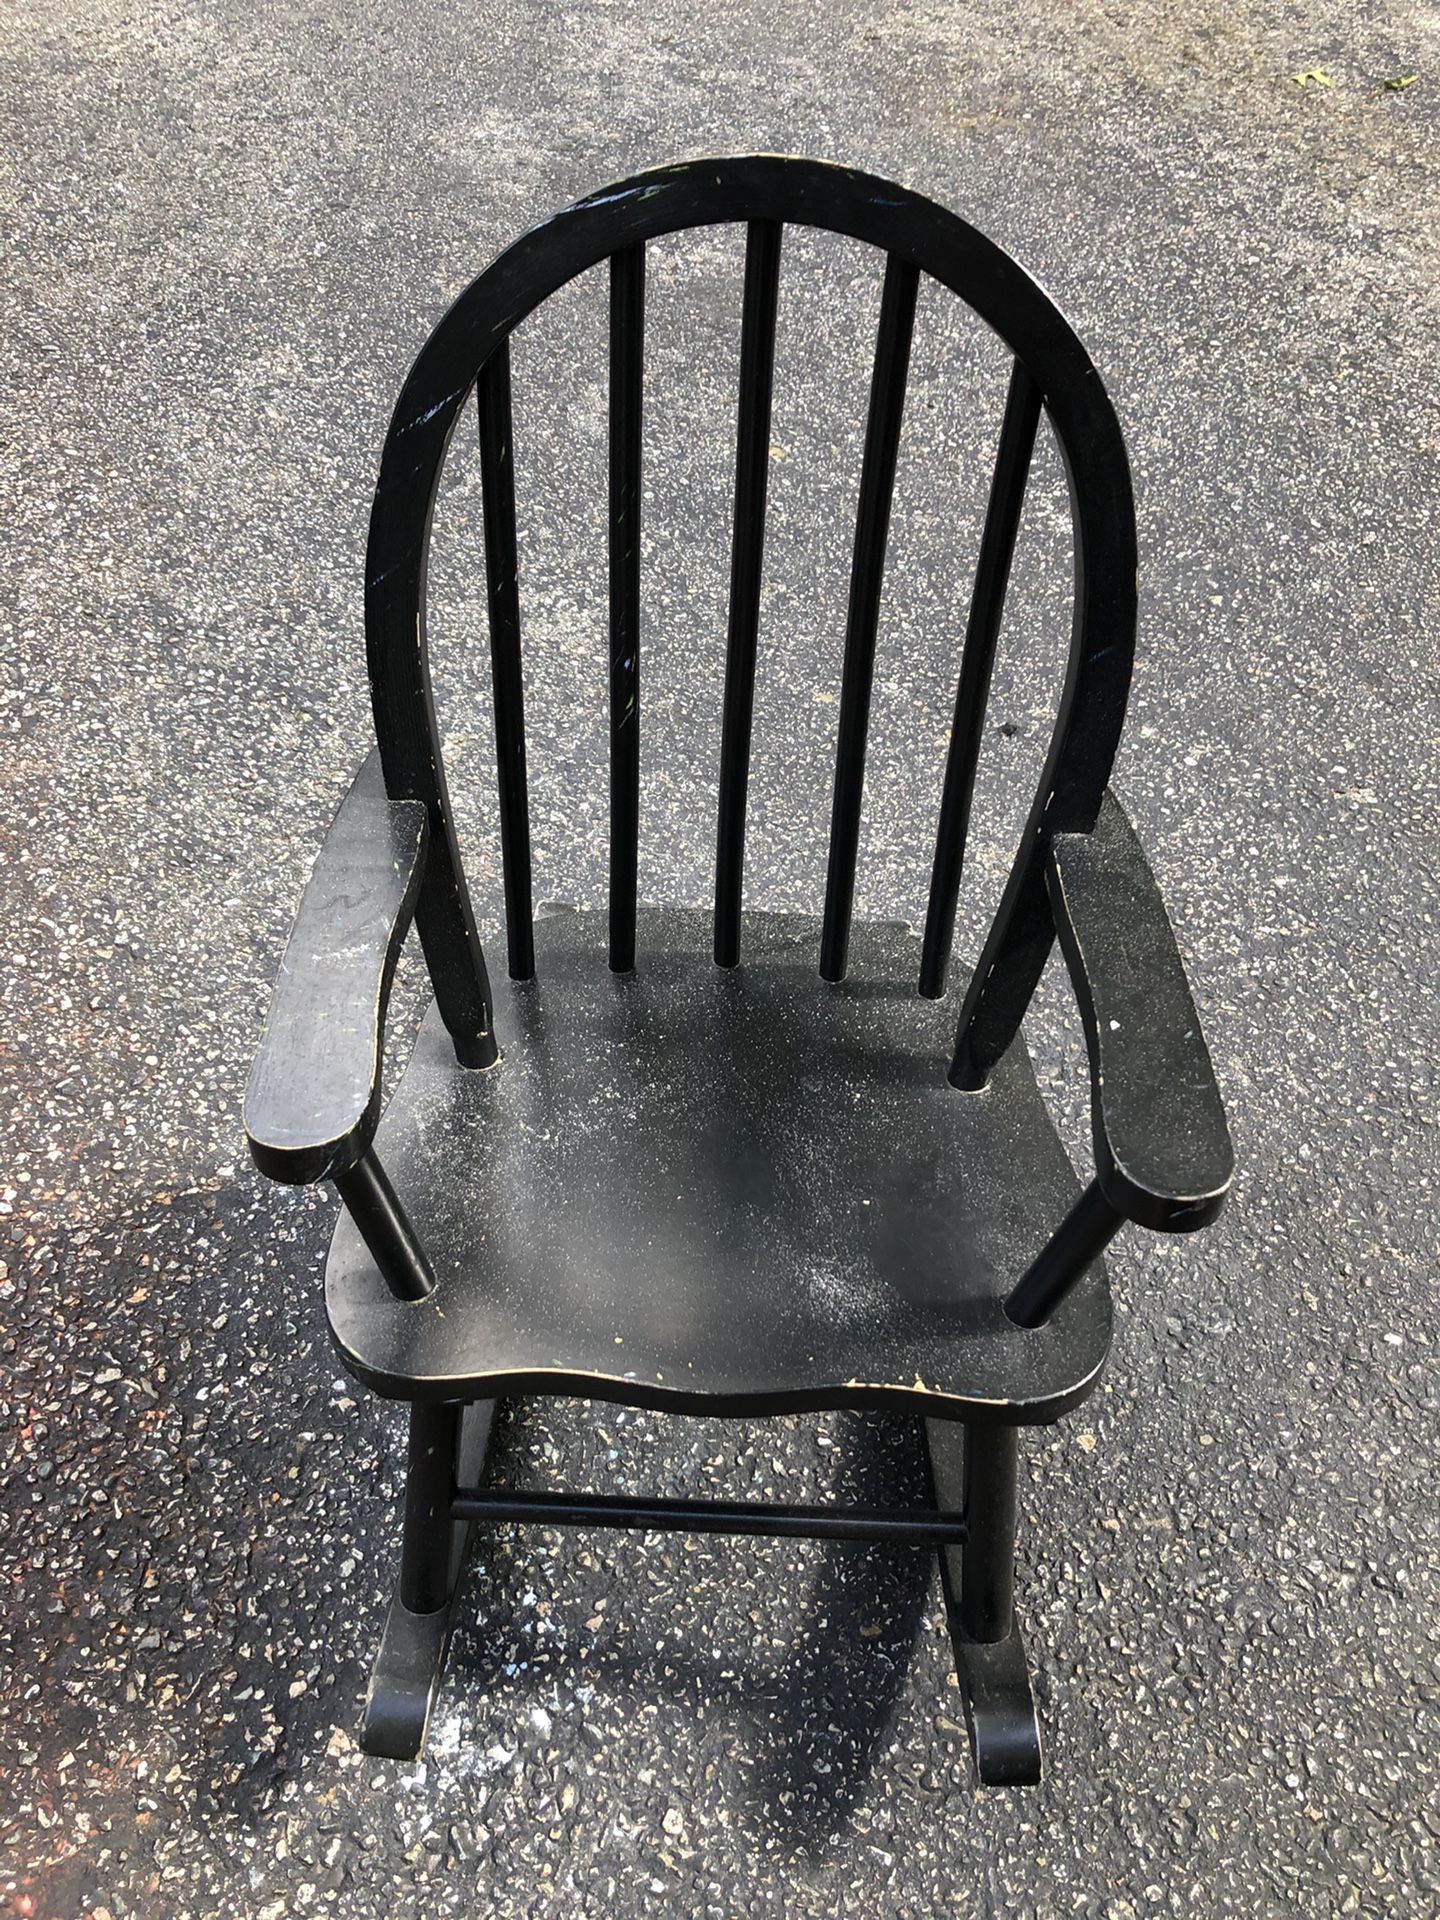 Rocking chair(toddler)